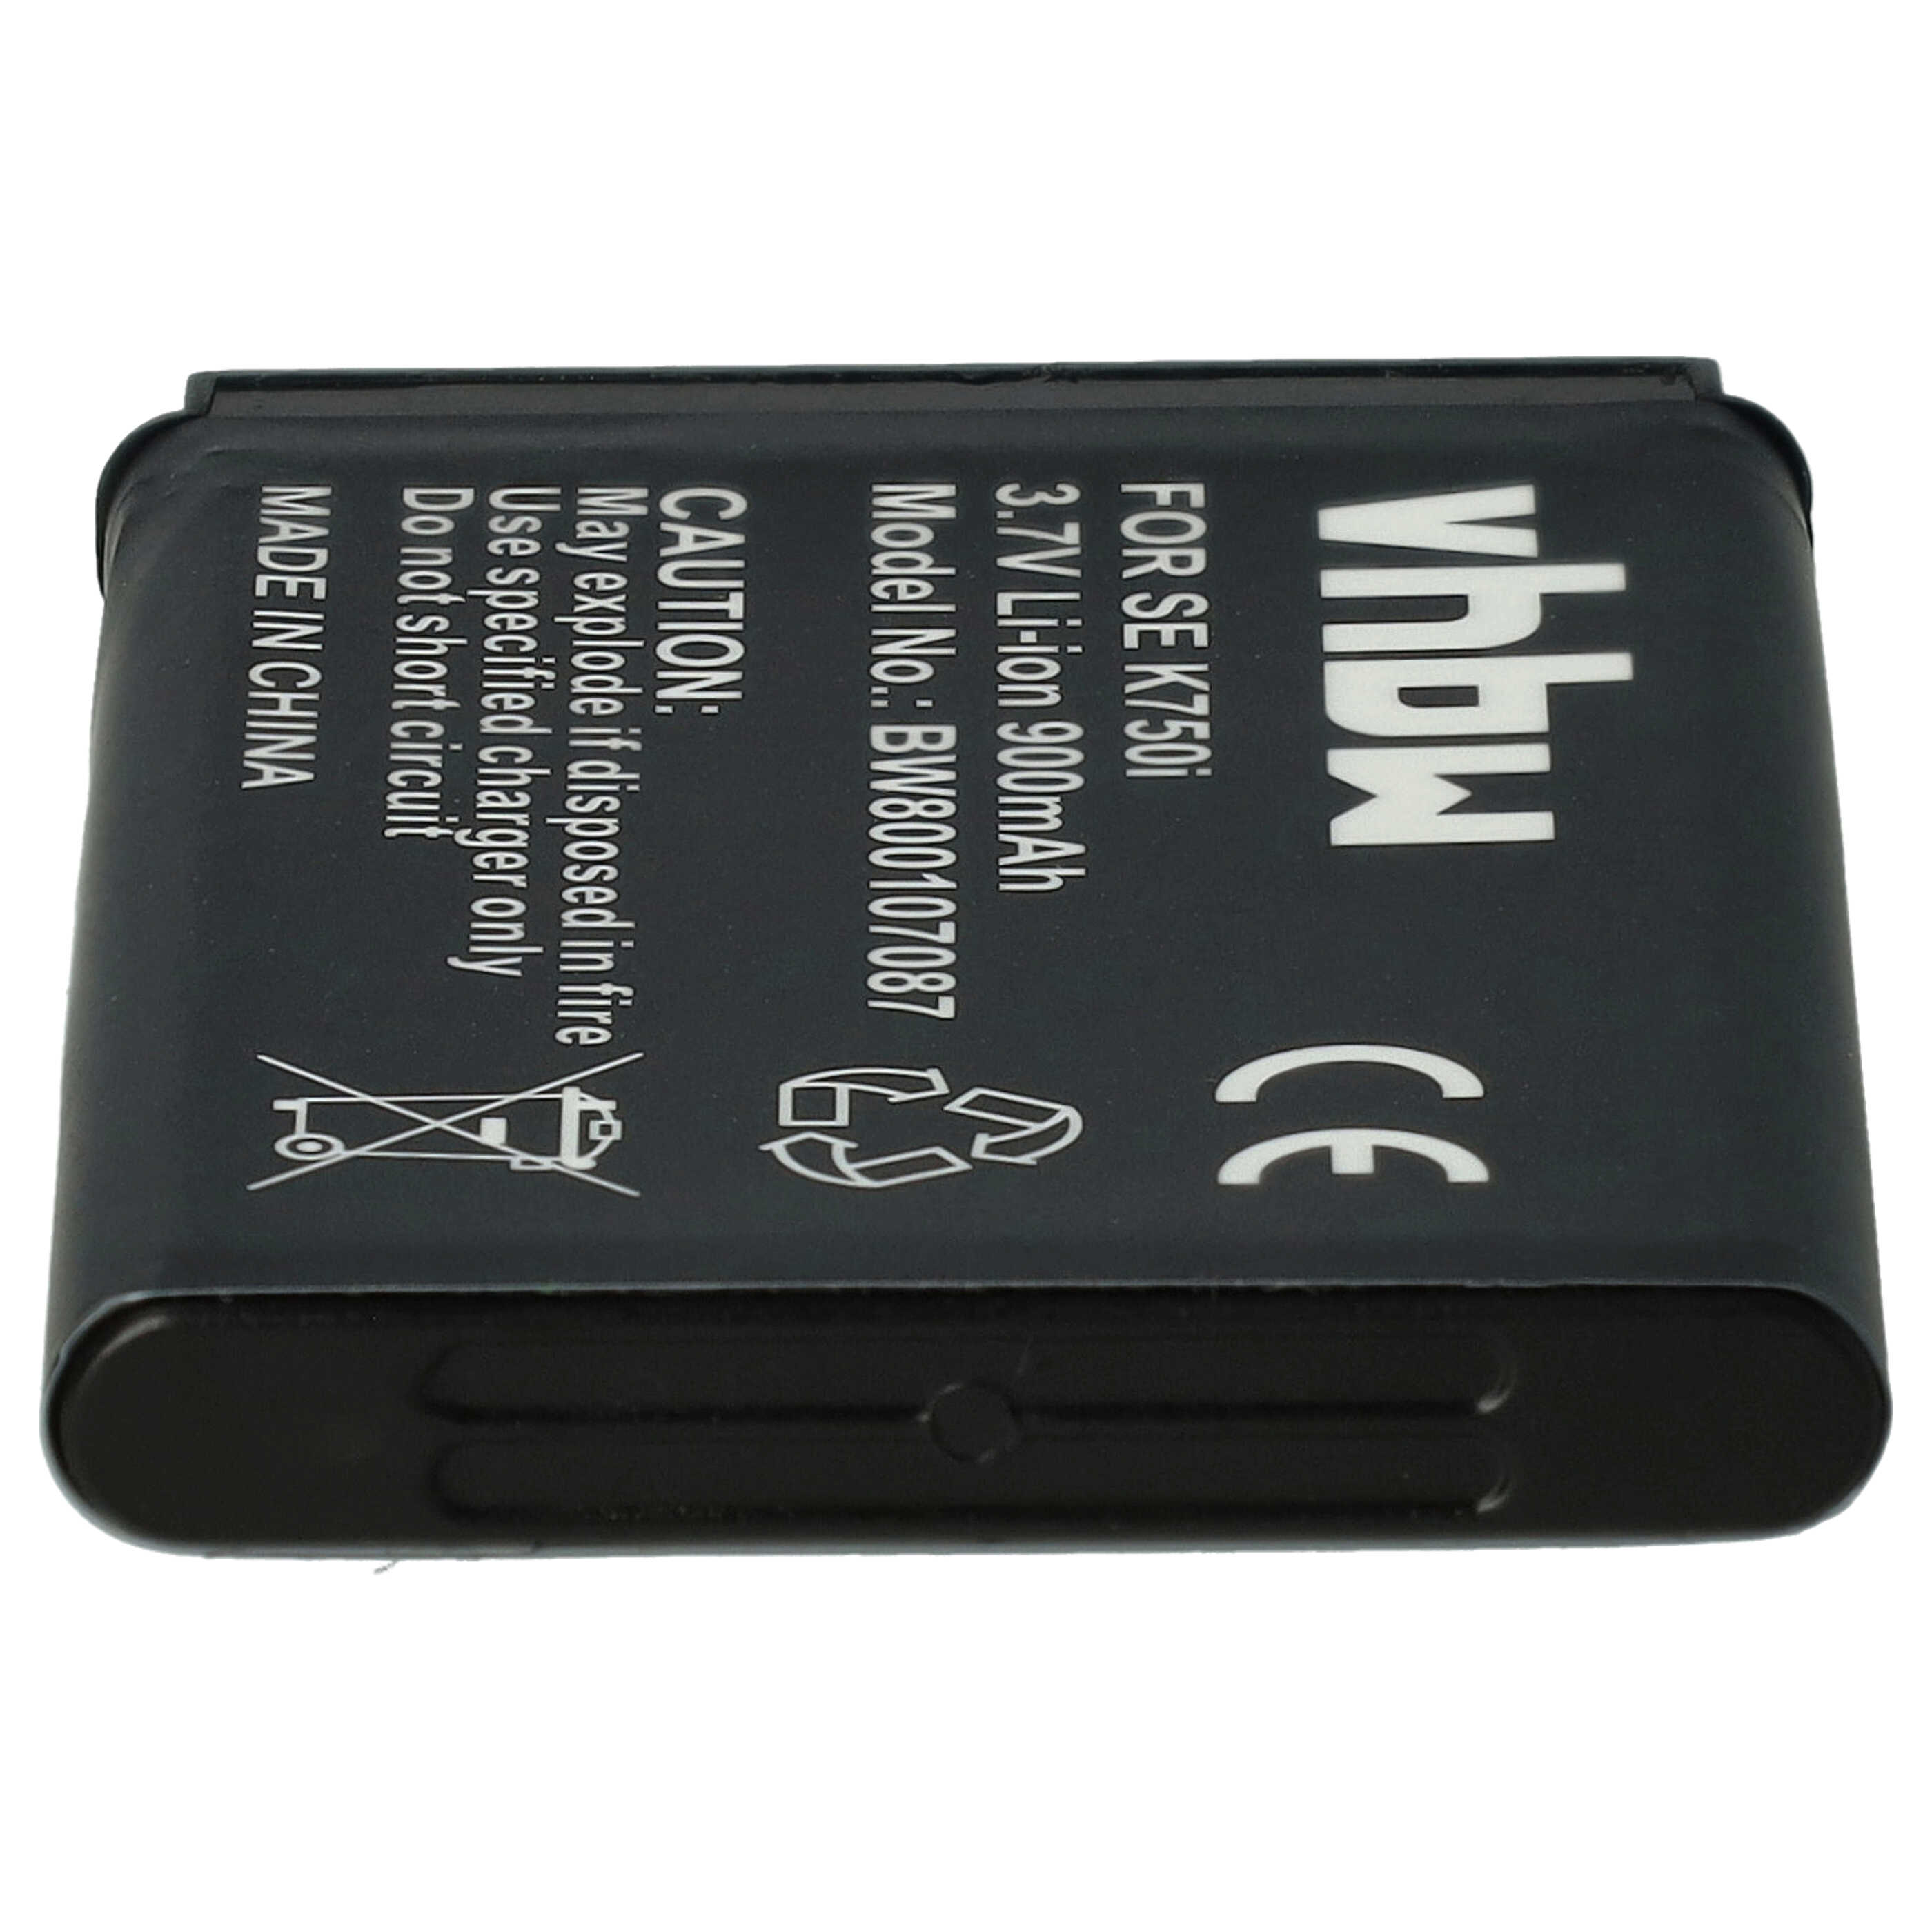 Batterie remplace Sony-Ericsson BST-37 pour téléphone portable - 900mAh, 3,7V, Li-ion